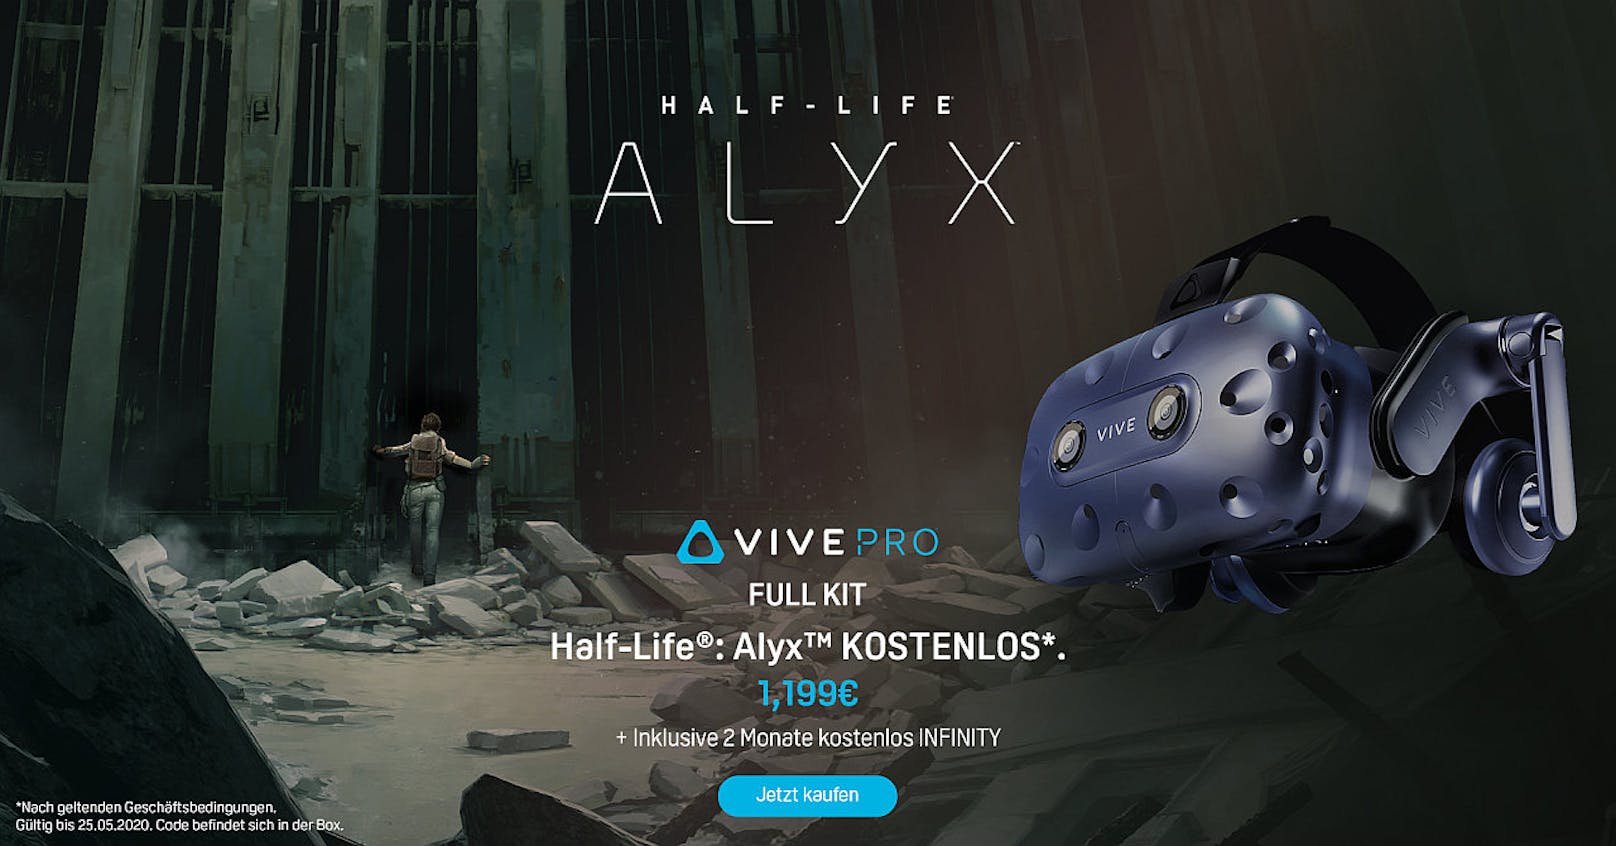 Das HTC Vive Pro Full Kit gibt es jetzt mit Half-Life: Alyx.